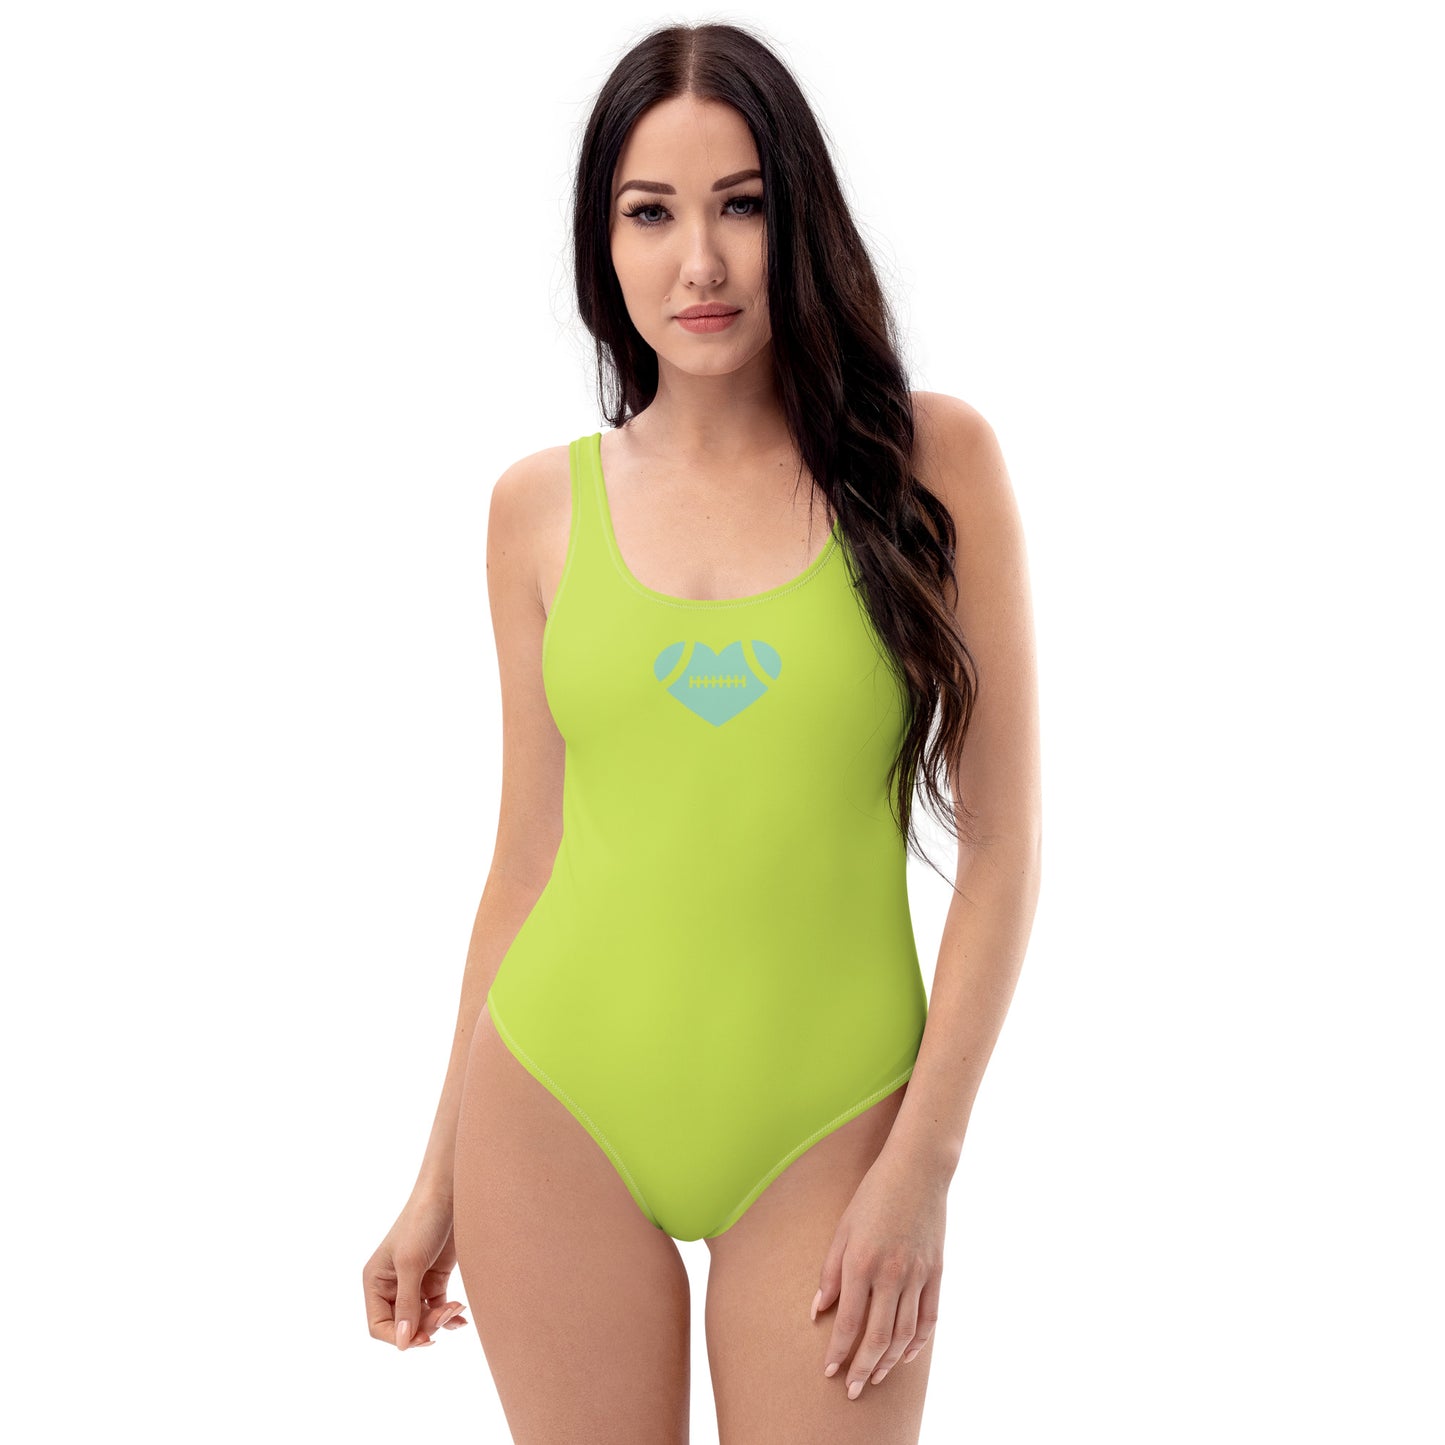 AFA Basics Solid Color Mindaro One-Piece Swimsuit